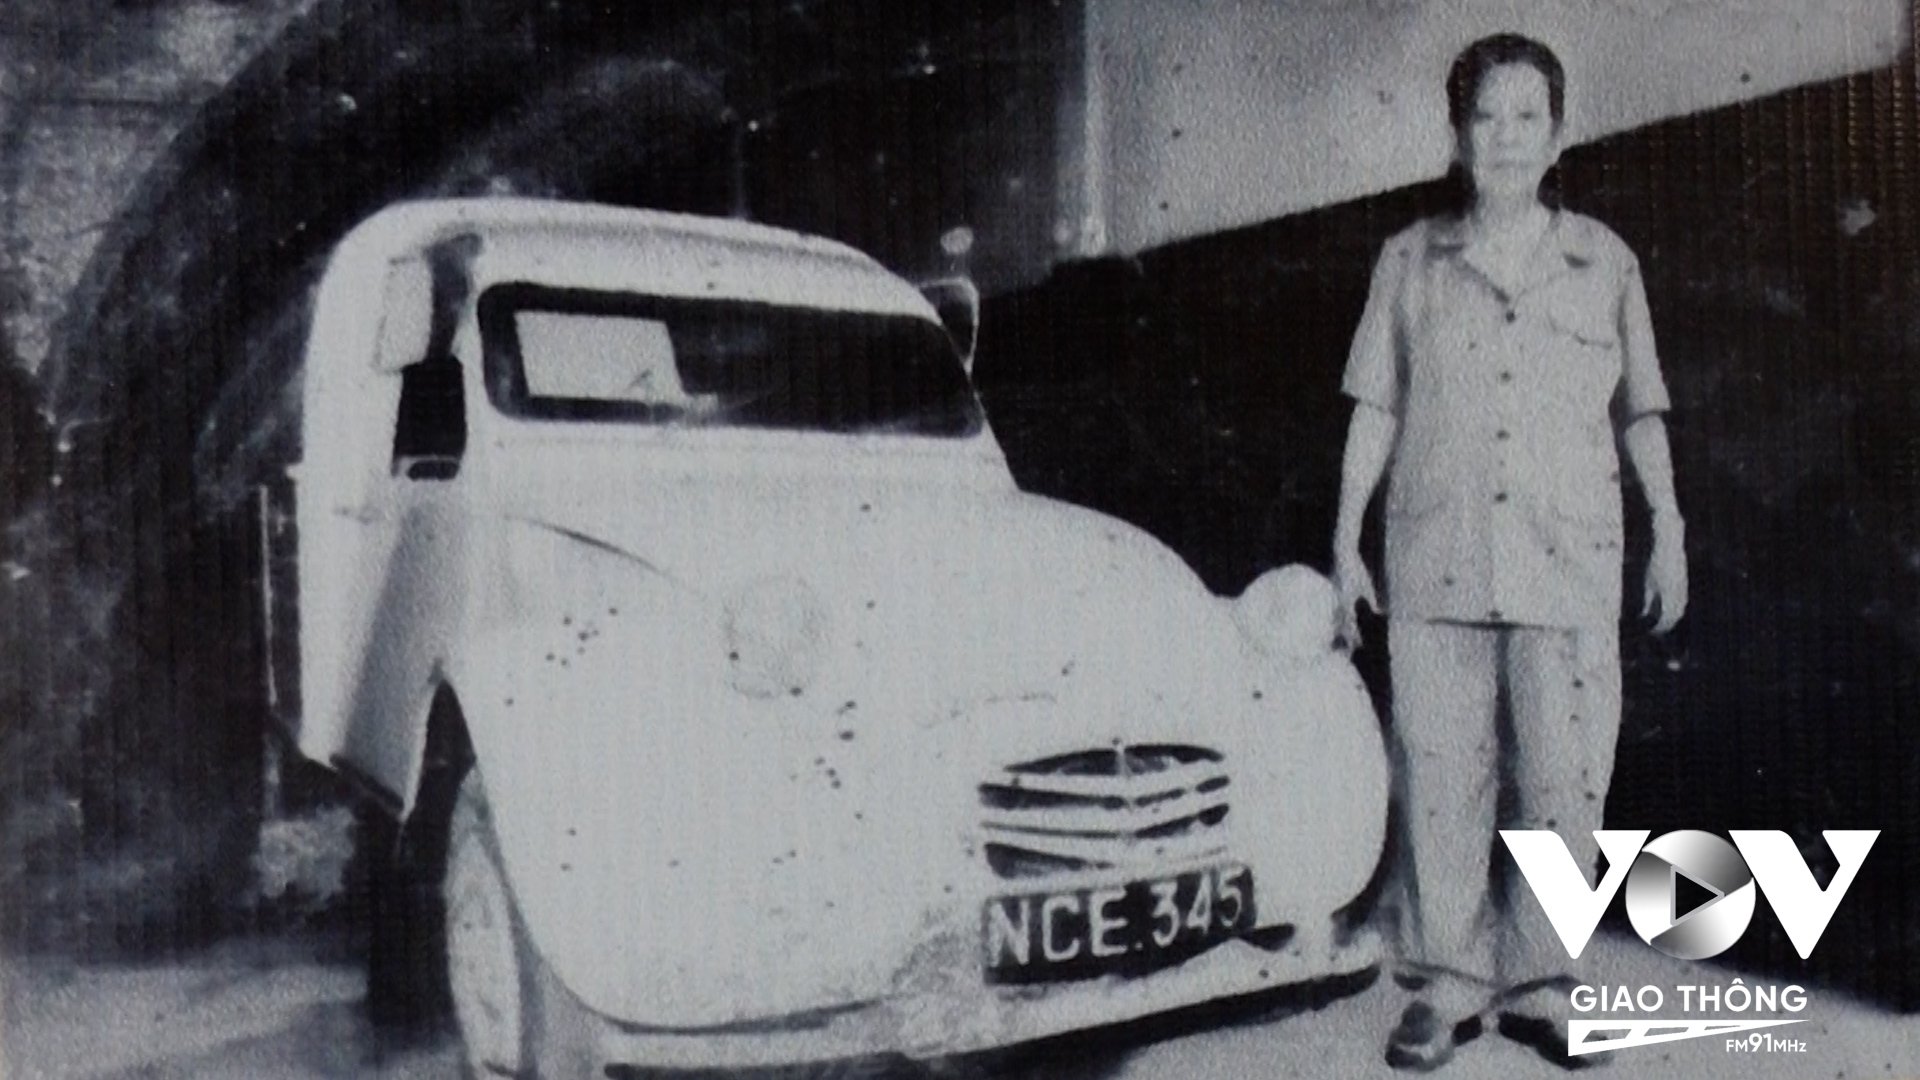 Chiếc xe hiệu Citroen NCE-345 chính là chiếc xe mà ông Trần Văn Lai (Năm Lai) - cựu cán bộ Biệt động Sài Gòn sử dụng trong chiến dịch Mậu Thân năm 1968